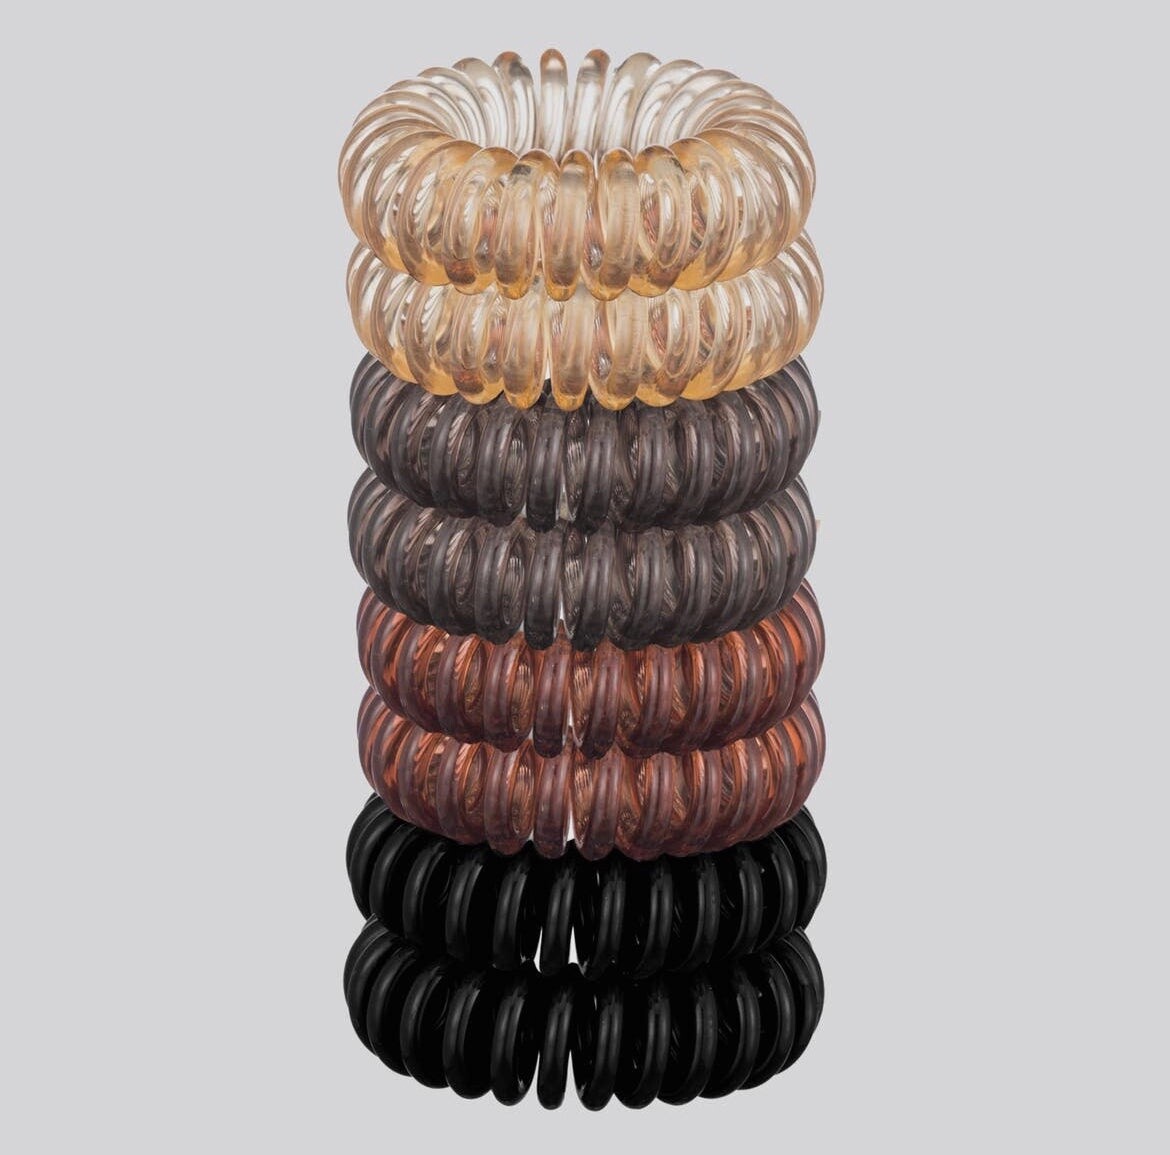 Spiral Hair Ties